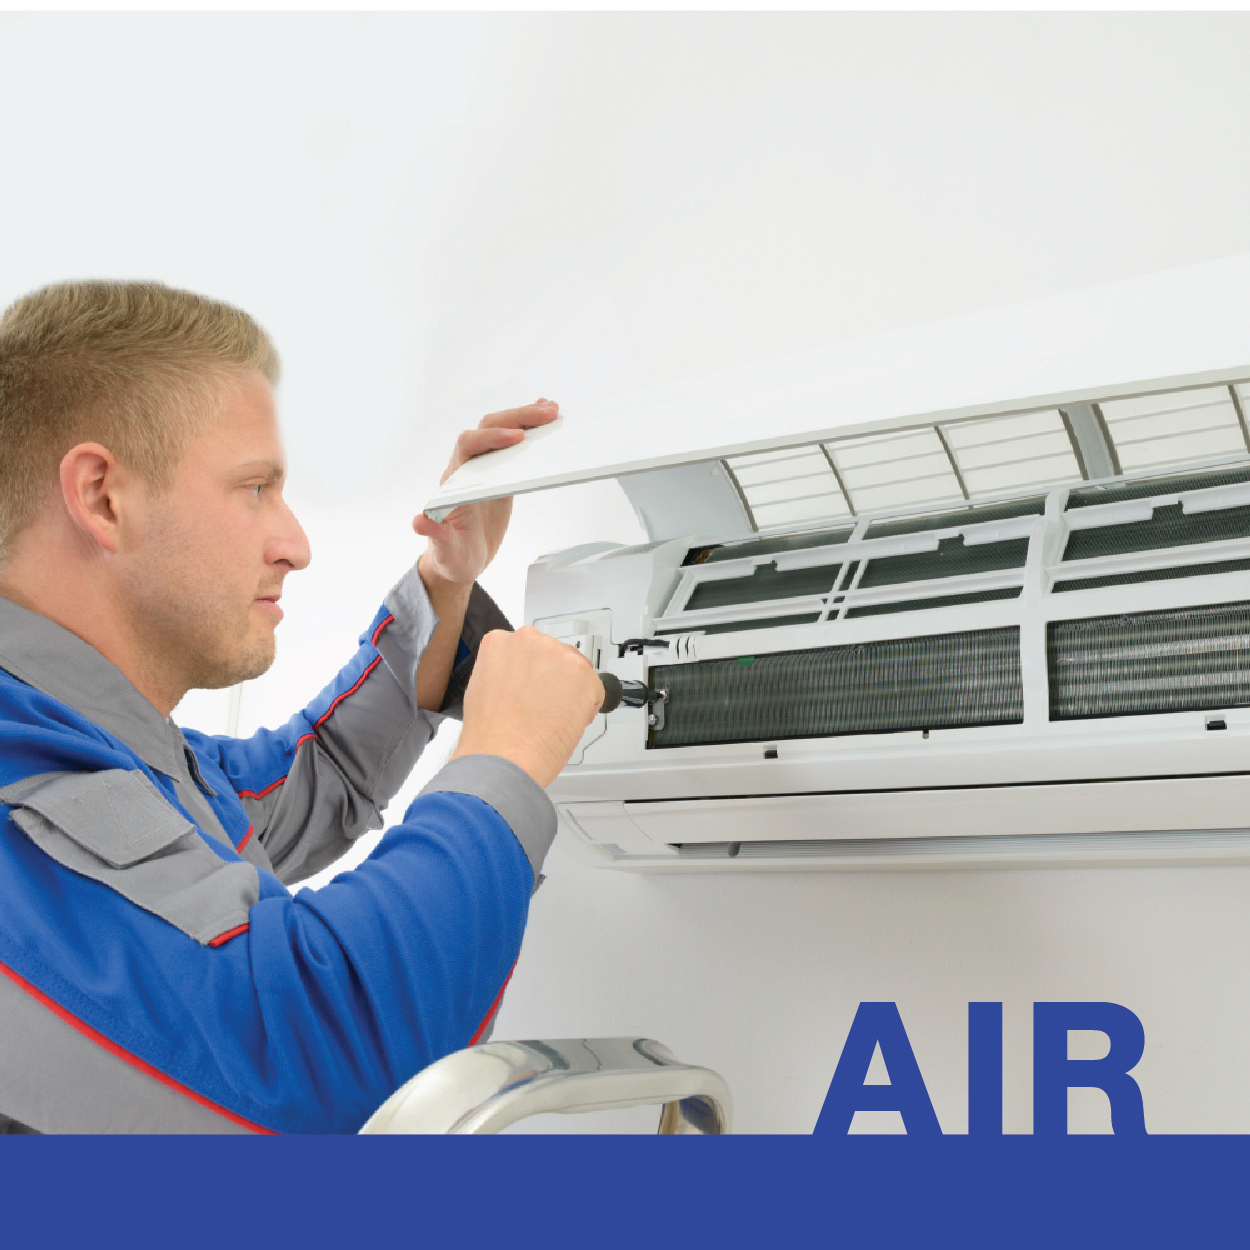 AIR : หลักสูตรช่างติดตั้ง และซ่อมบำรุงแอร์-ตู้เย็น